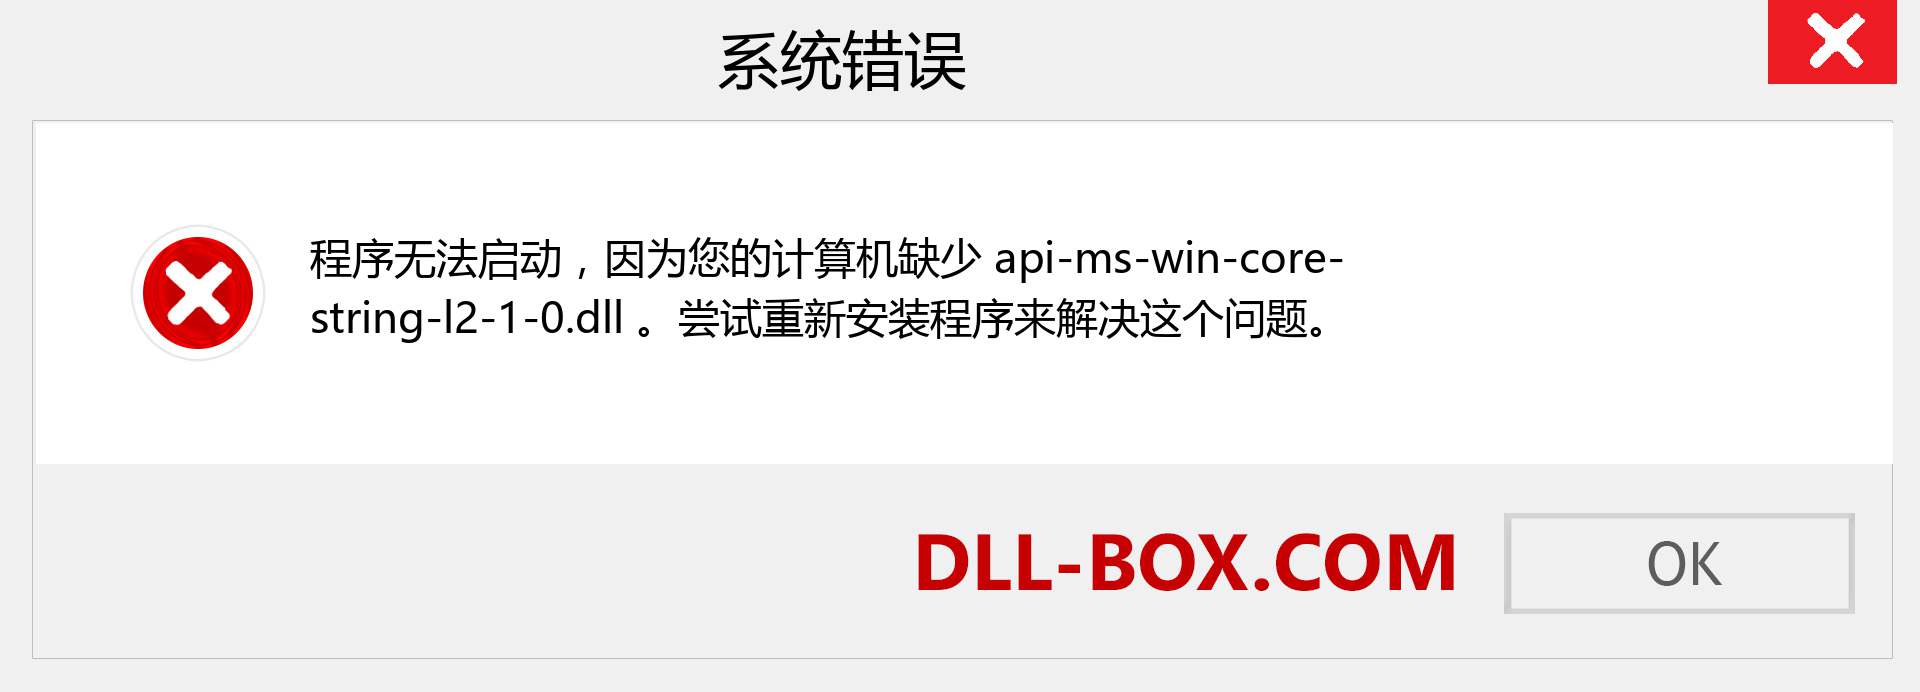 api-ms-win-core-string-l2-1-0.dll 文件丢失？。 适用于 Windows 7、8、10 的下载 - 修复 Windows、照片、图像上的 api-ms-win-core-string-l2-1-0 dll 丢失错误